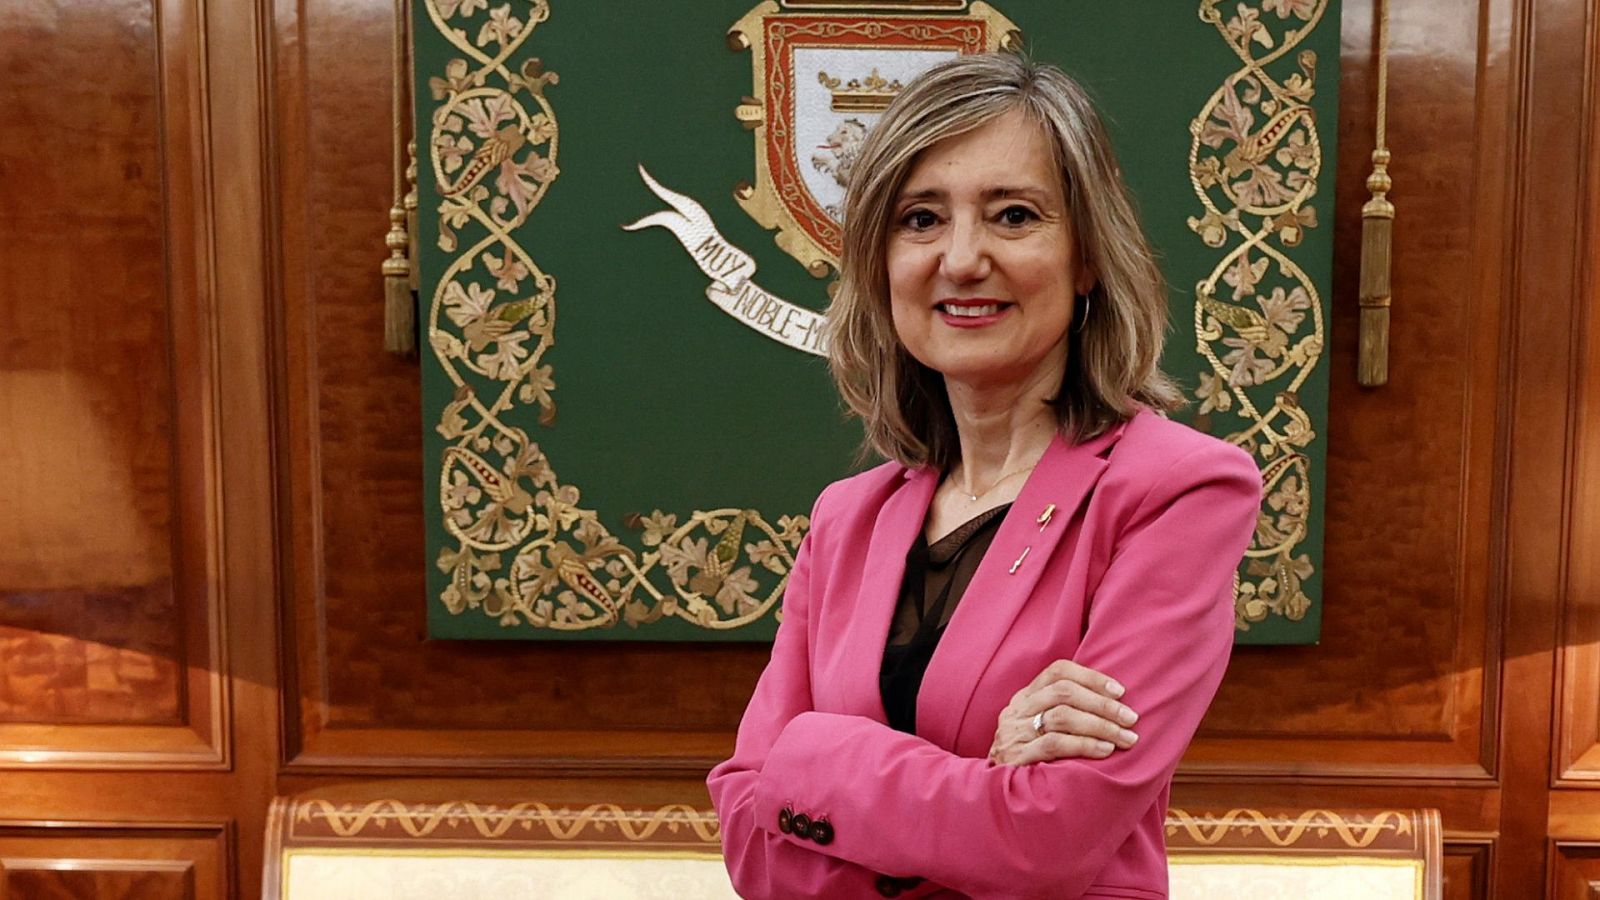 Hablamos con Cristina Ibarrola, alcaldesa de Pamplona